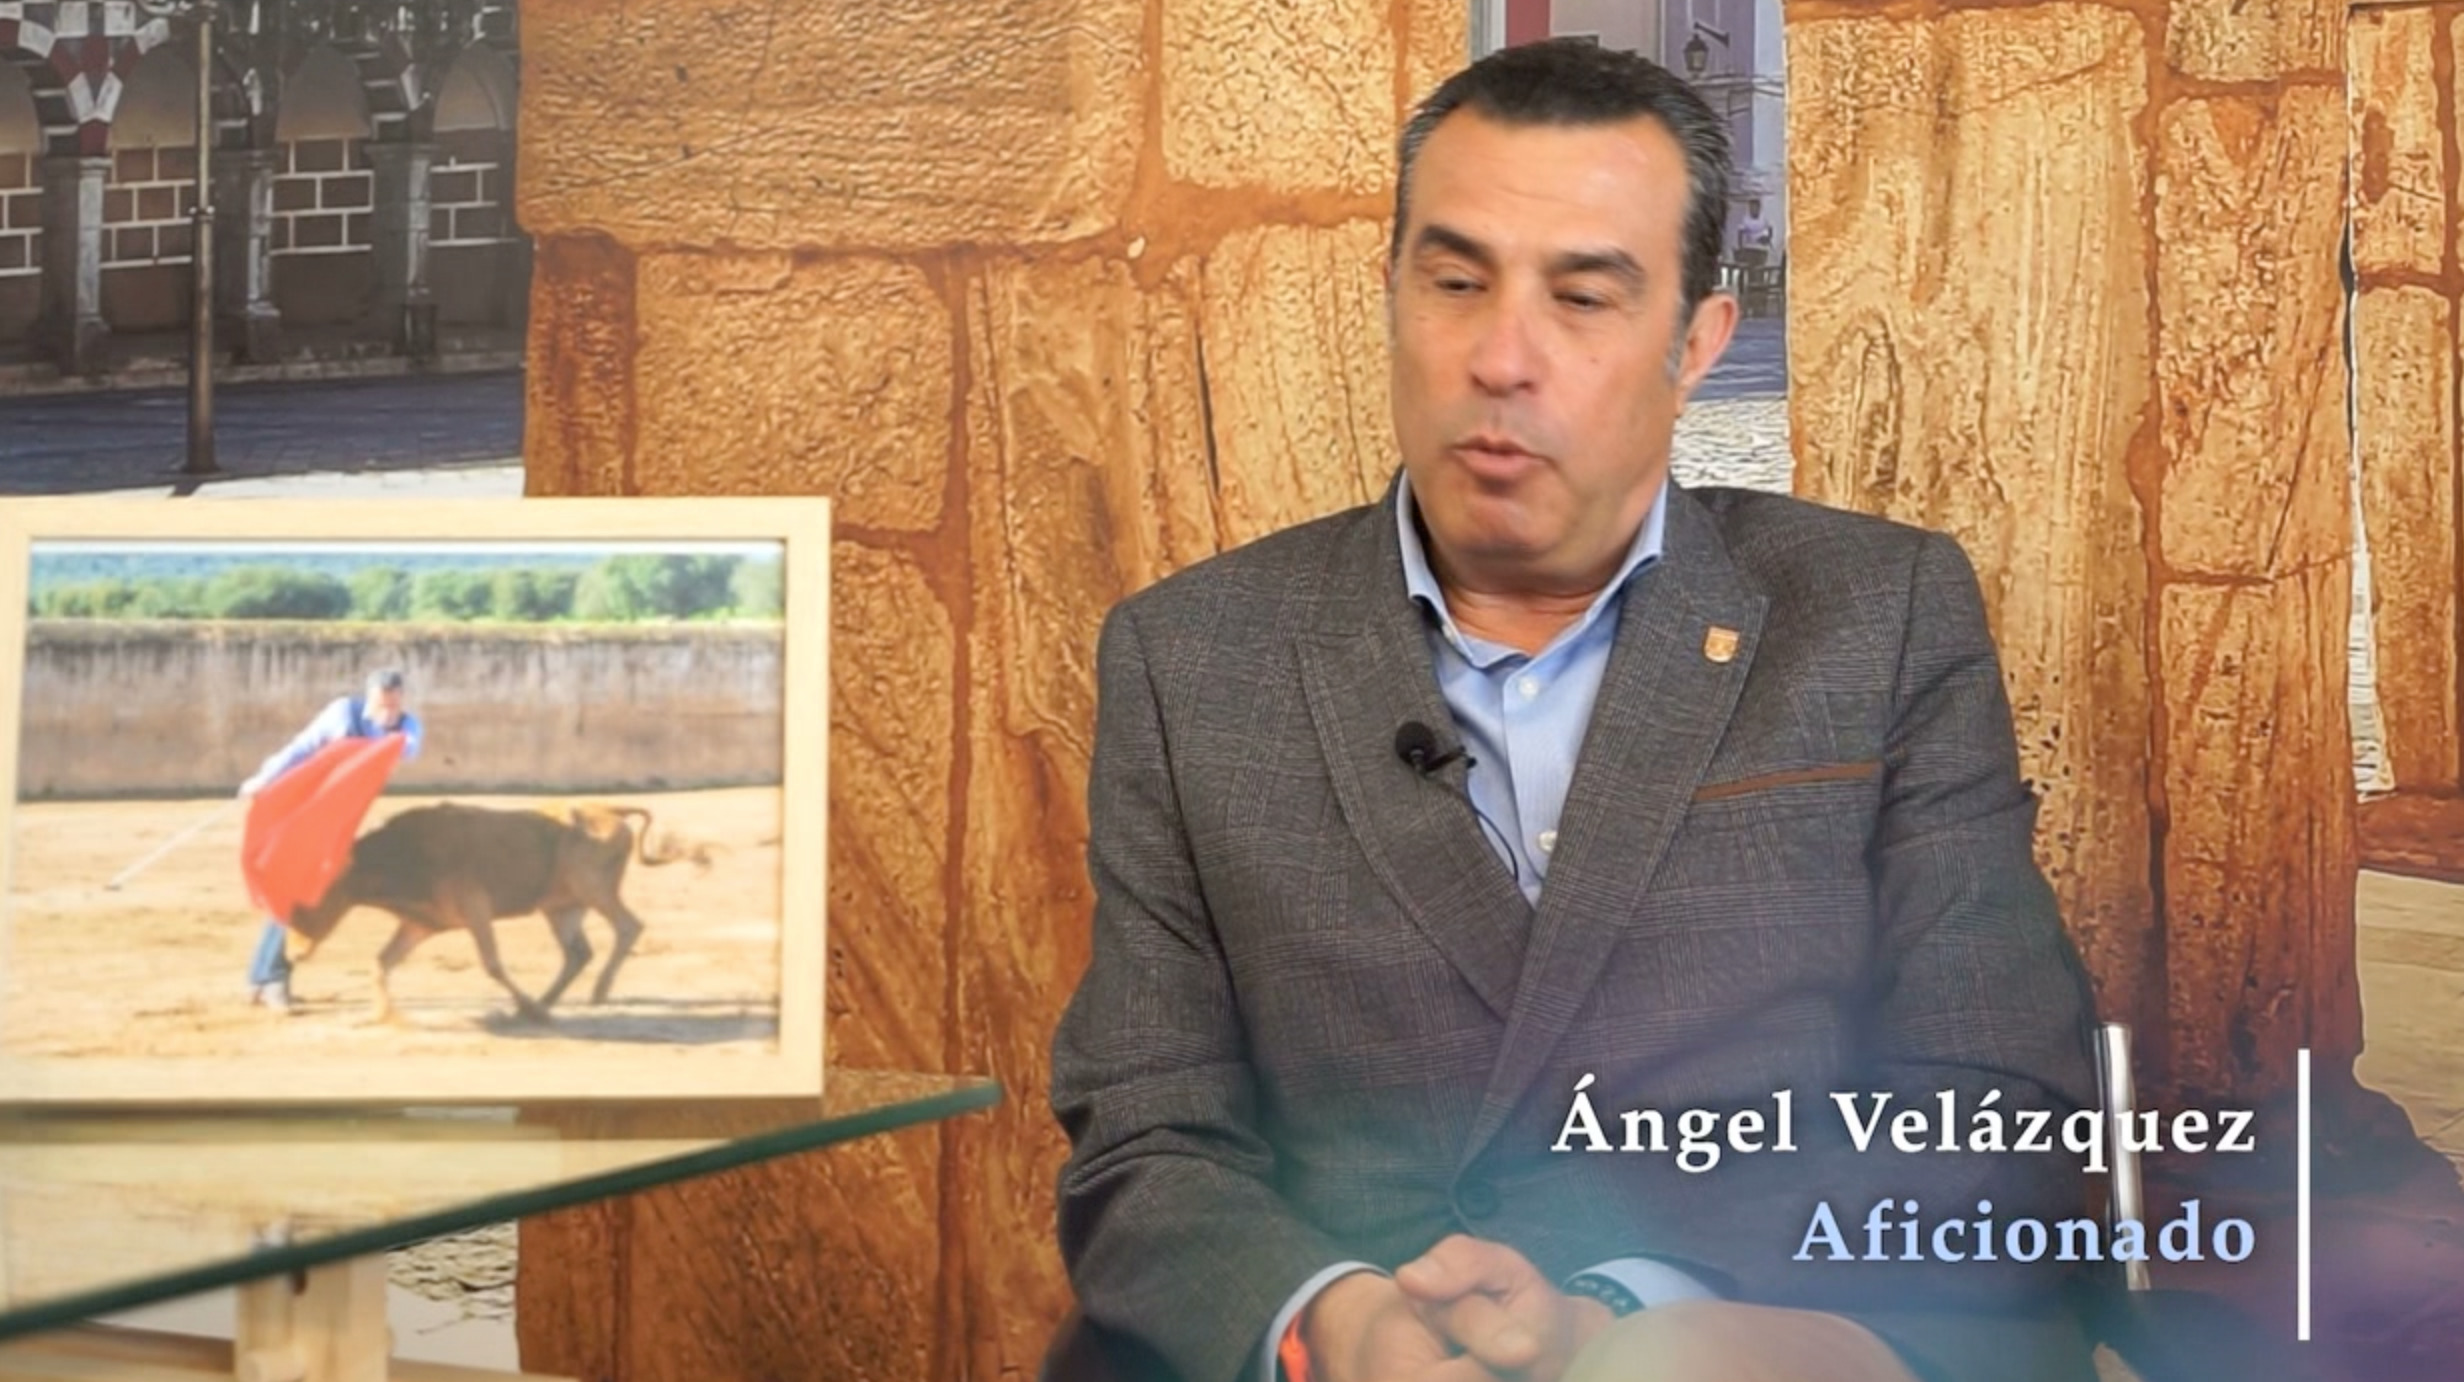 El aficionado Ángel Velázquez nos acompaña para rememorar una importante tarde en Mérida